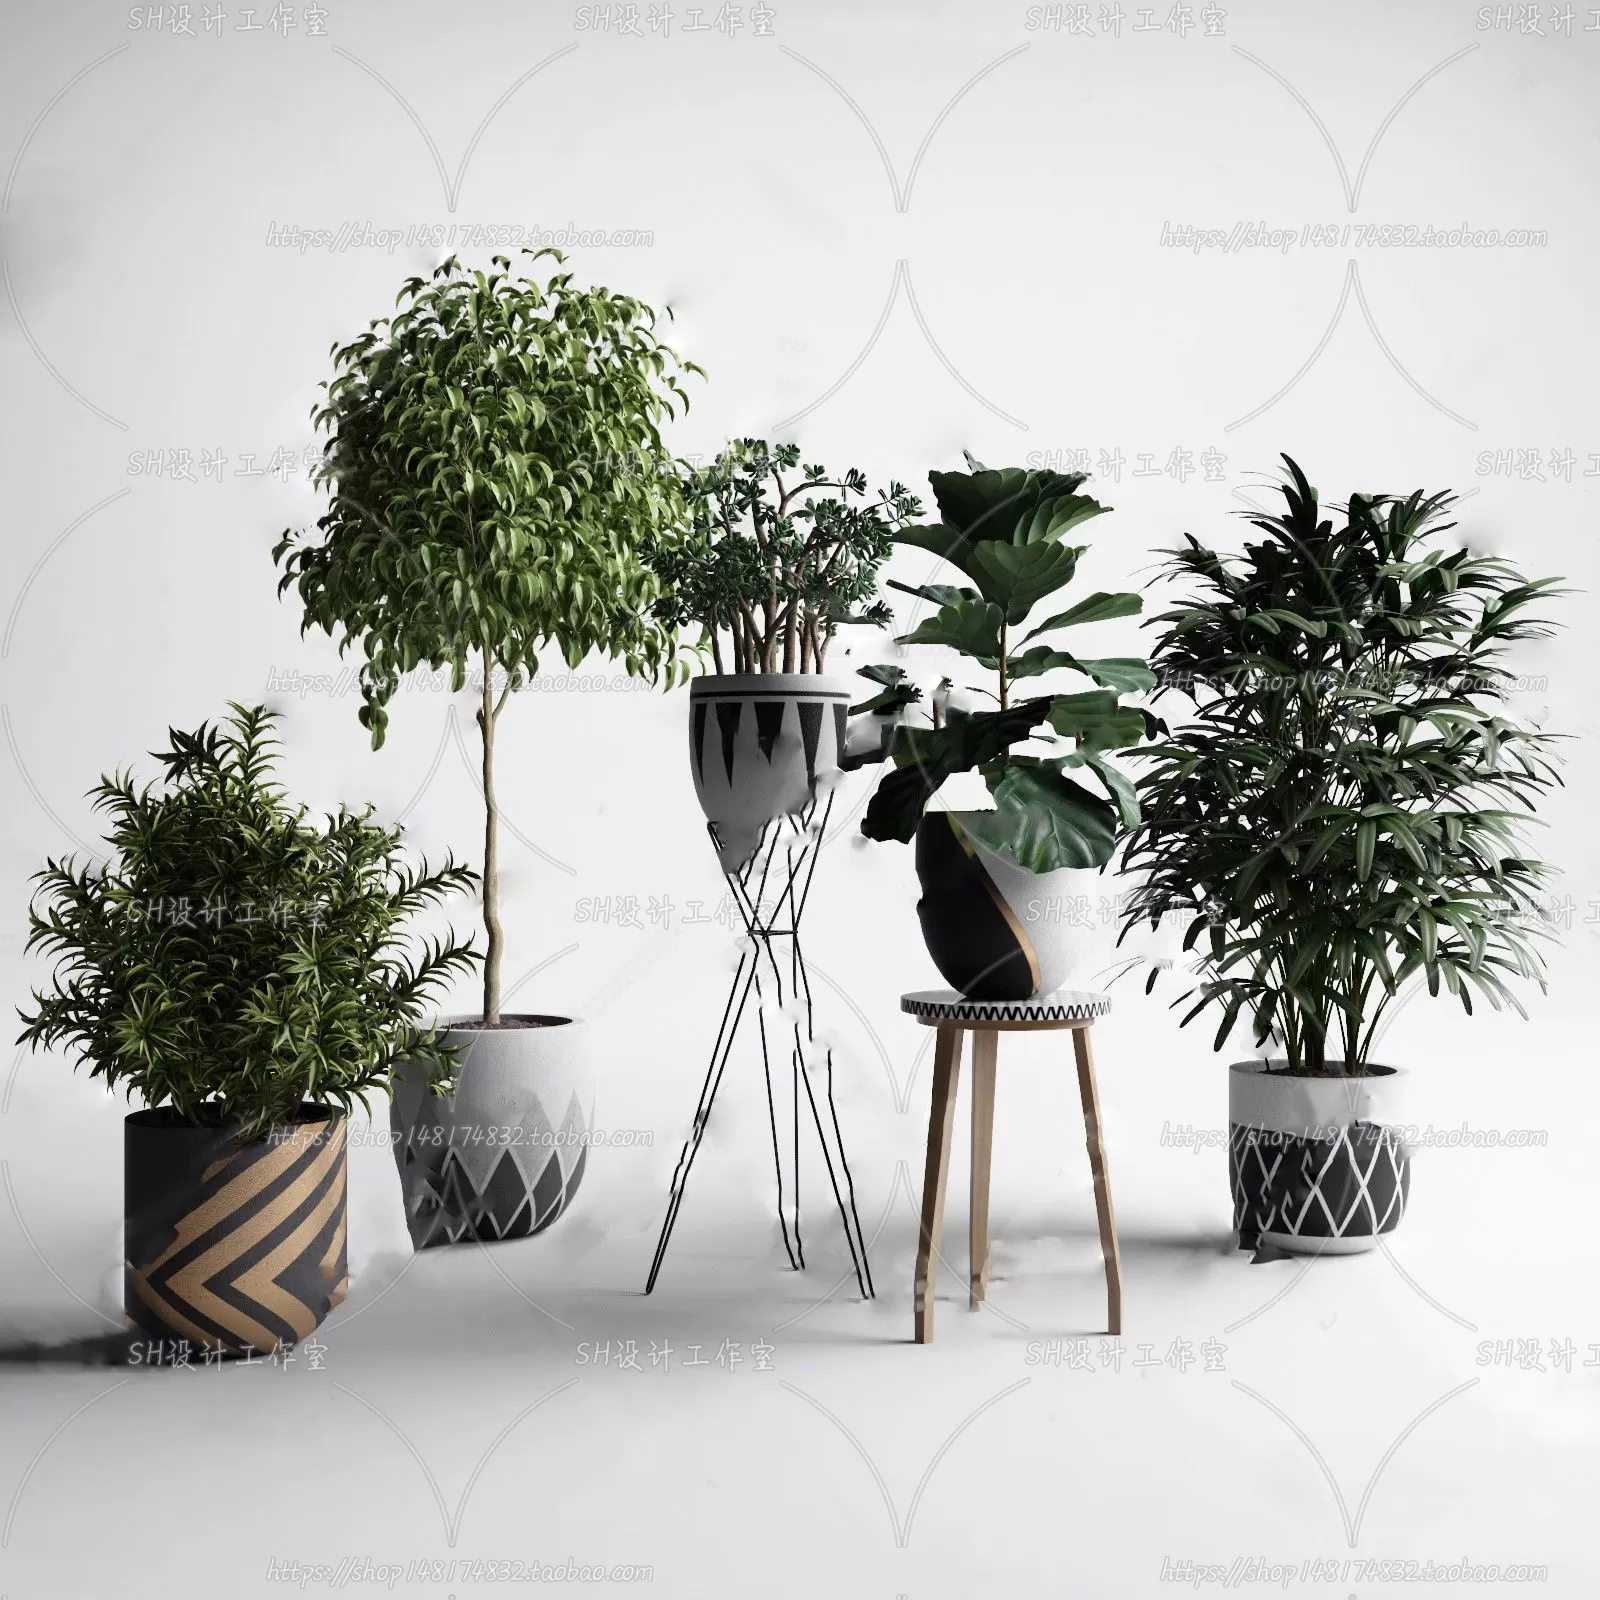 PLANT 3D MODELS – 100